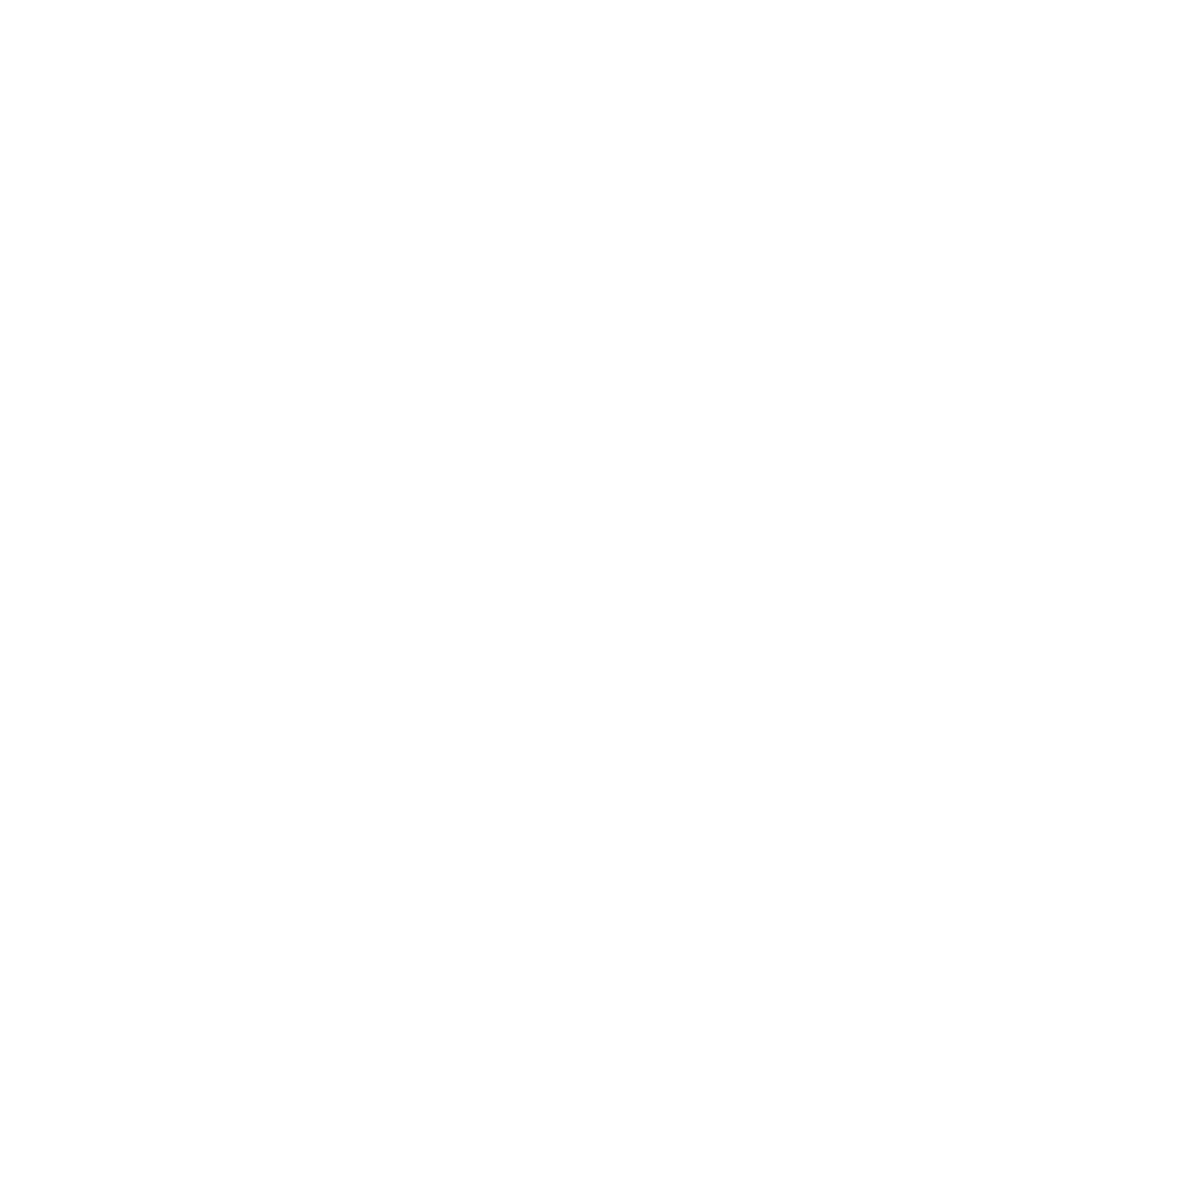 new-ellevate-logo-068b4b1aada851b14301637af34abe8f4ad1f5ee6eea14d3a3d4ed795c1ff958